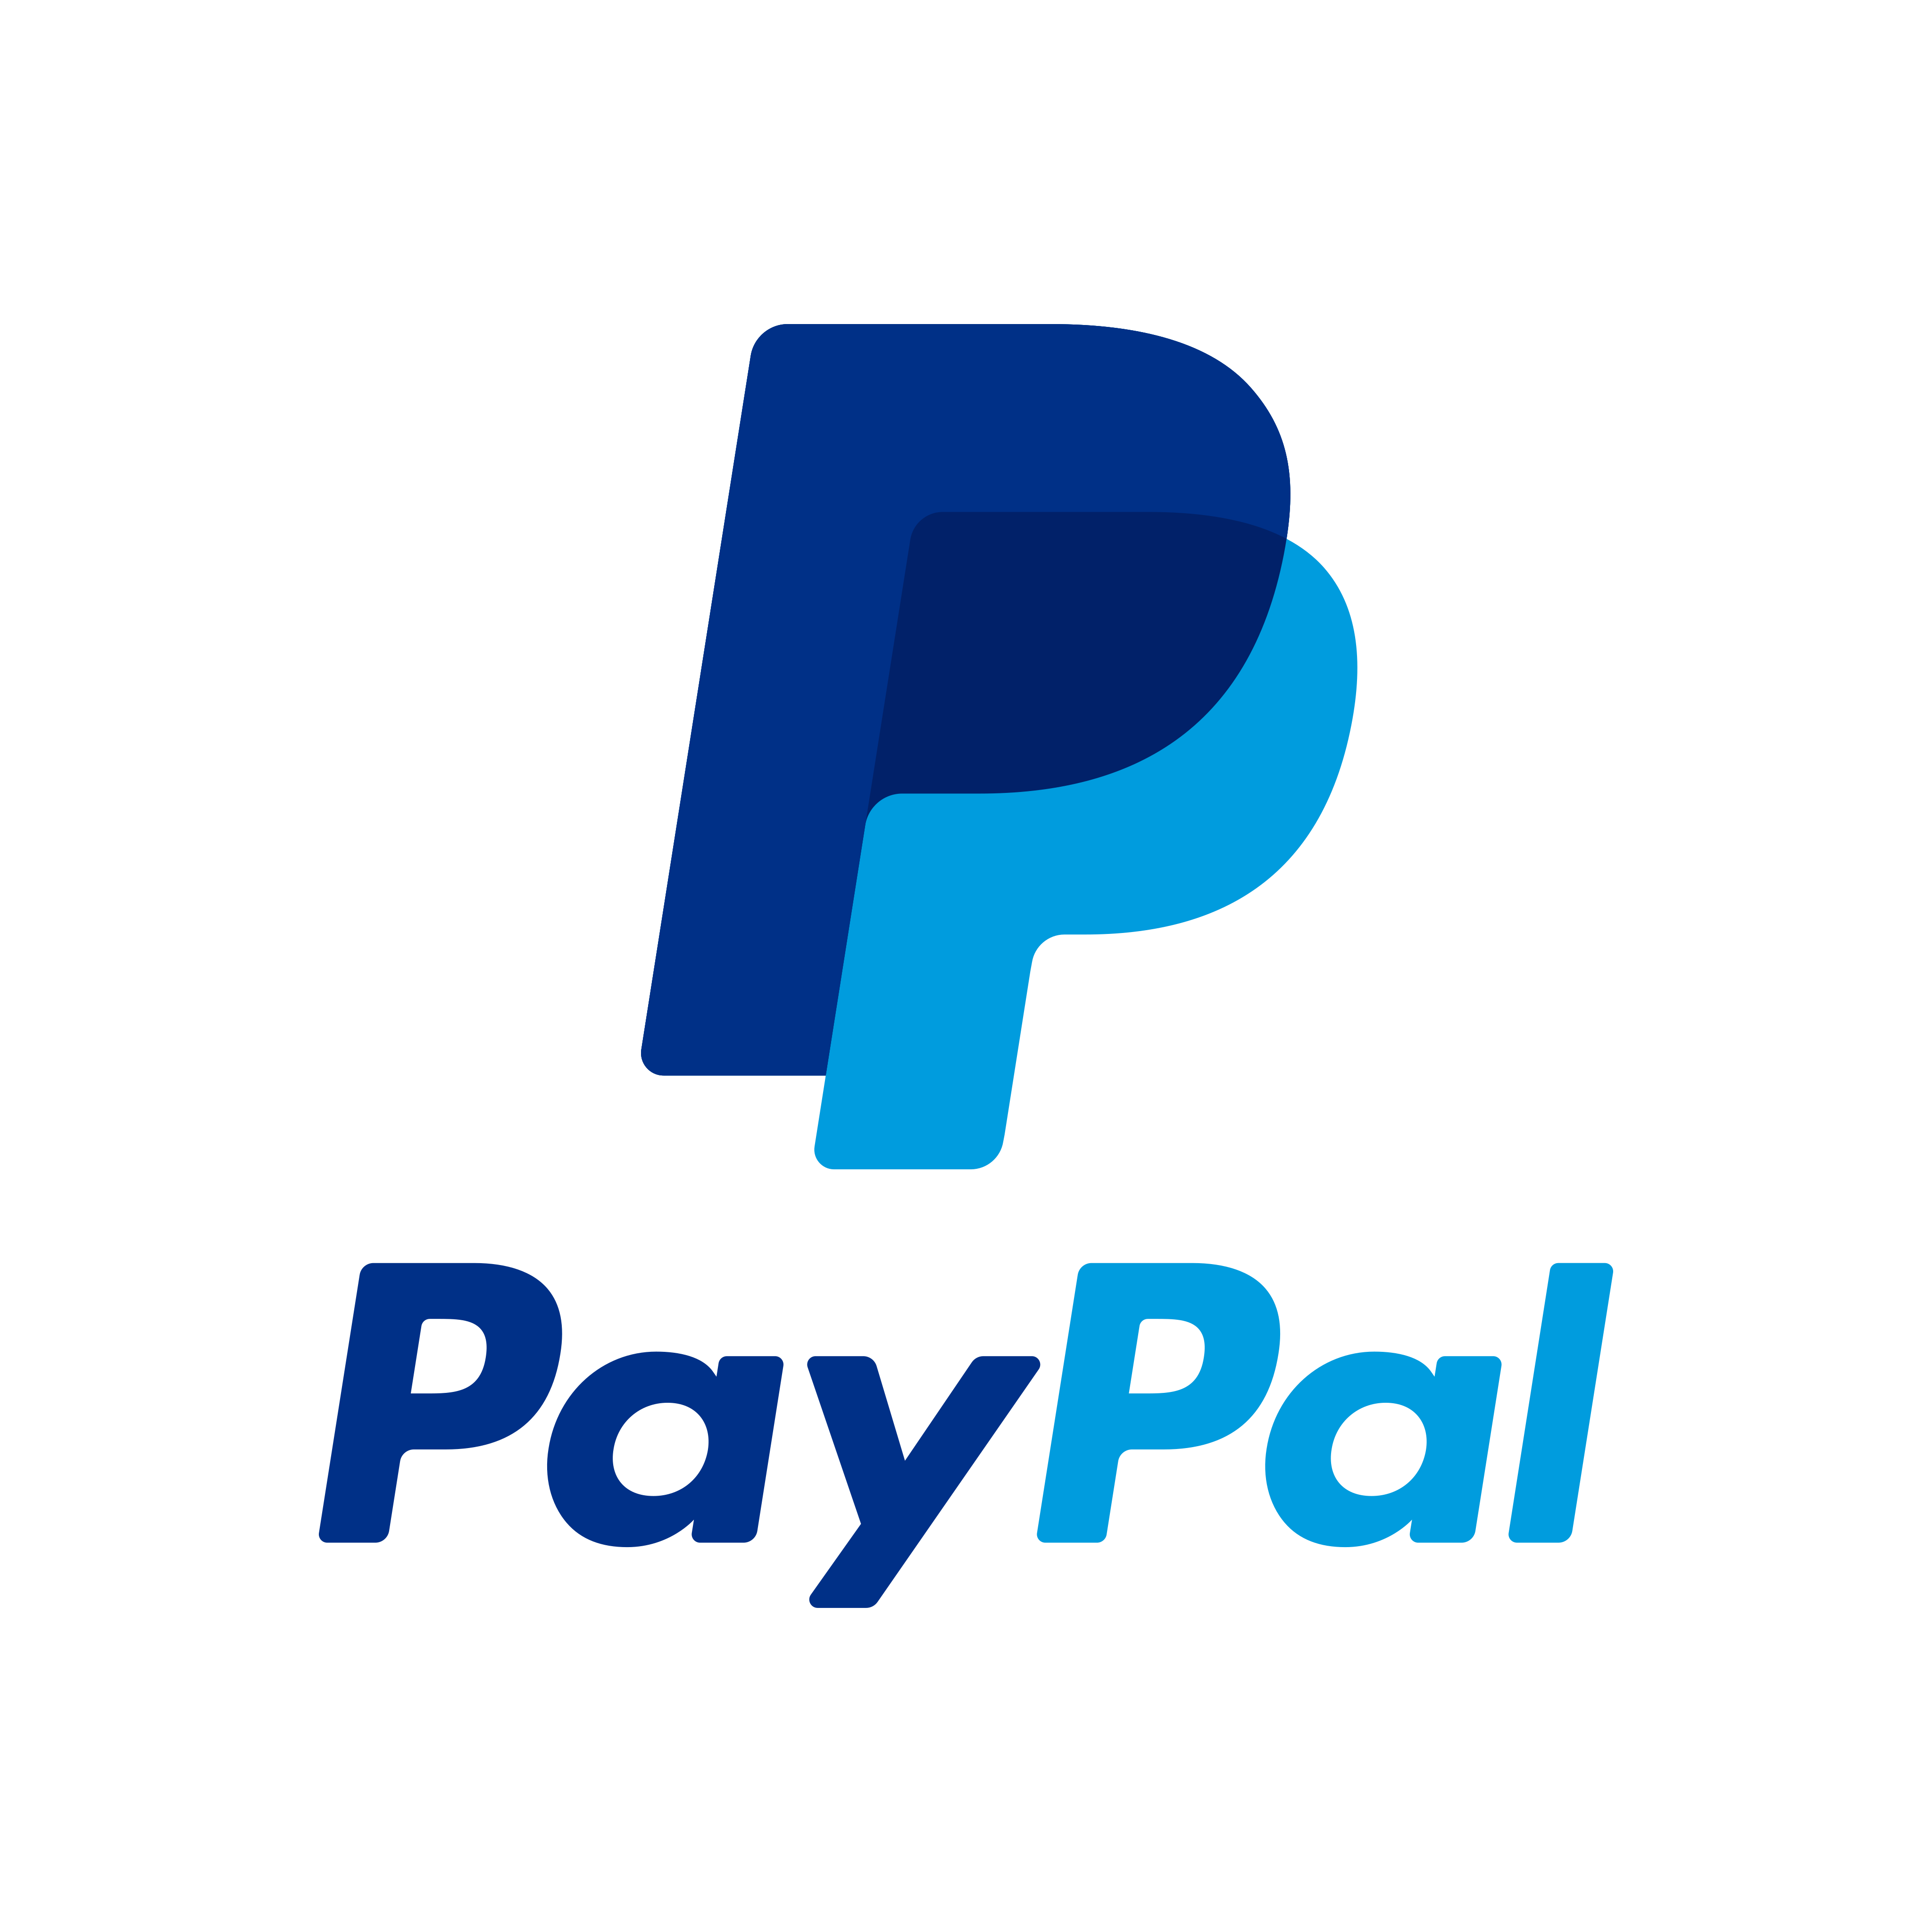 yH5BAEAAAAALAAAAAABAAEAAAIBRAA7 - Paypal Logo